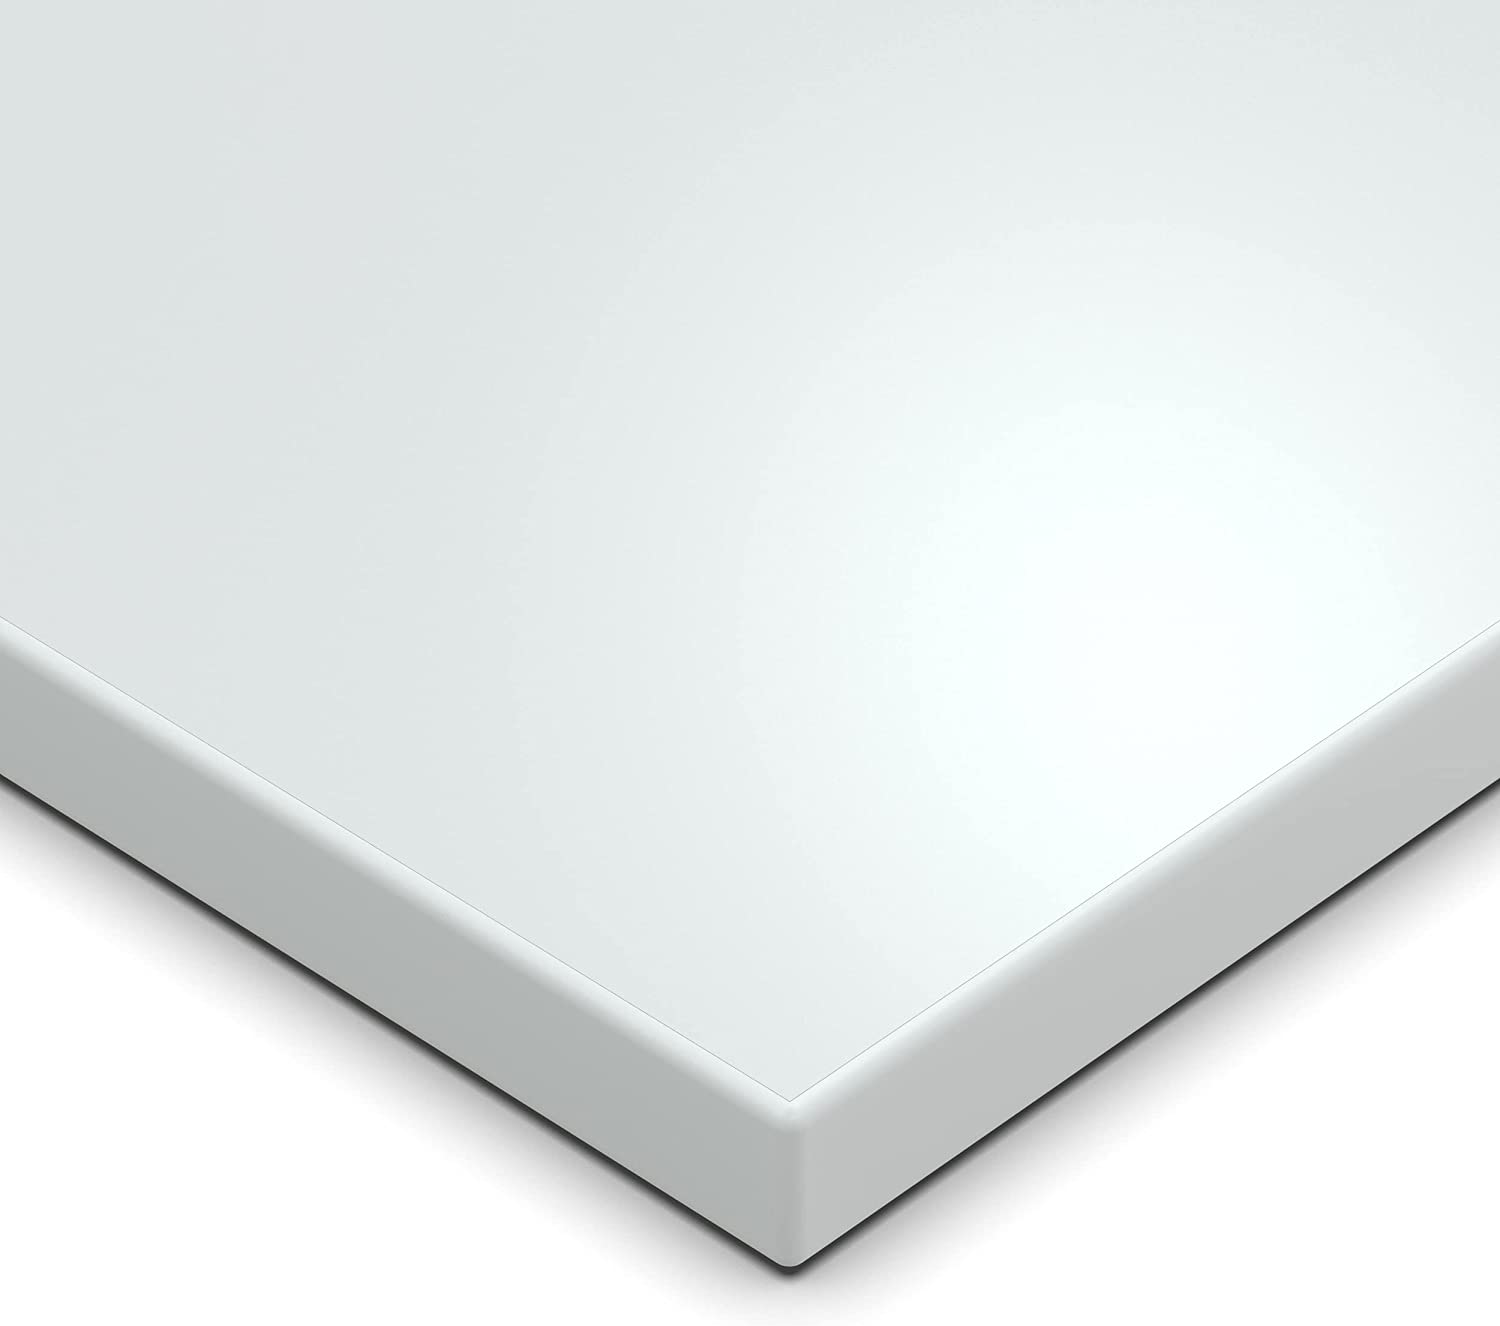 Geschirrspülerfront 715 x 594 mm, Weiss Frontblende Tür 19mm voll-, teilintegriert oder n. Maß - Tischlerware Qualität aus Deutschland Kopie Kopie